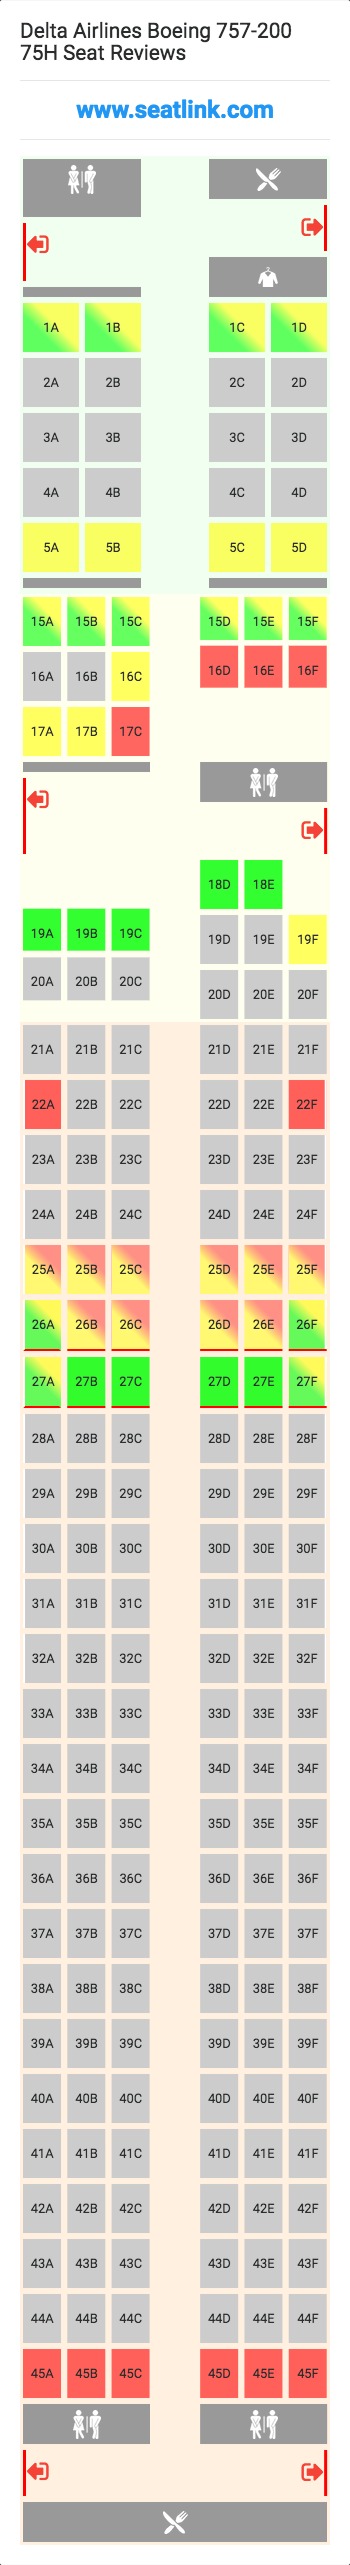 Delta Flight 444 Seating Chart